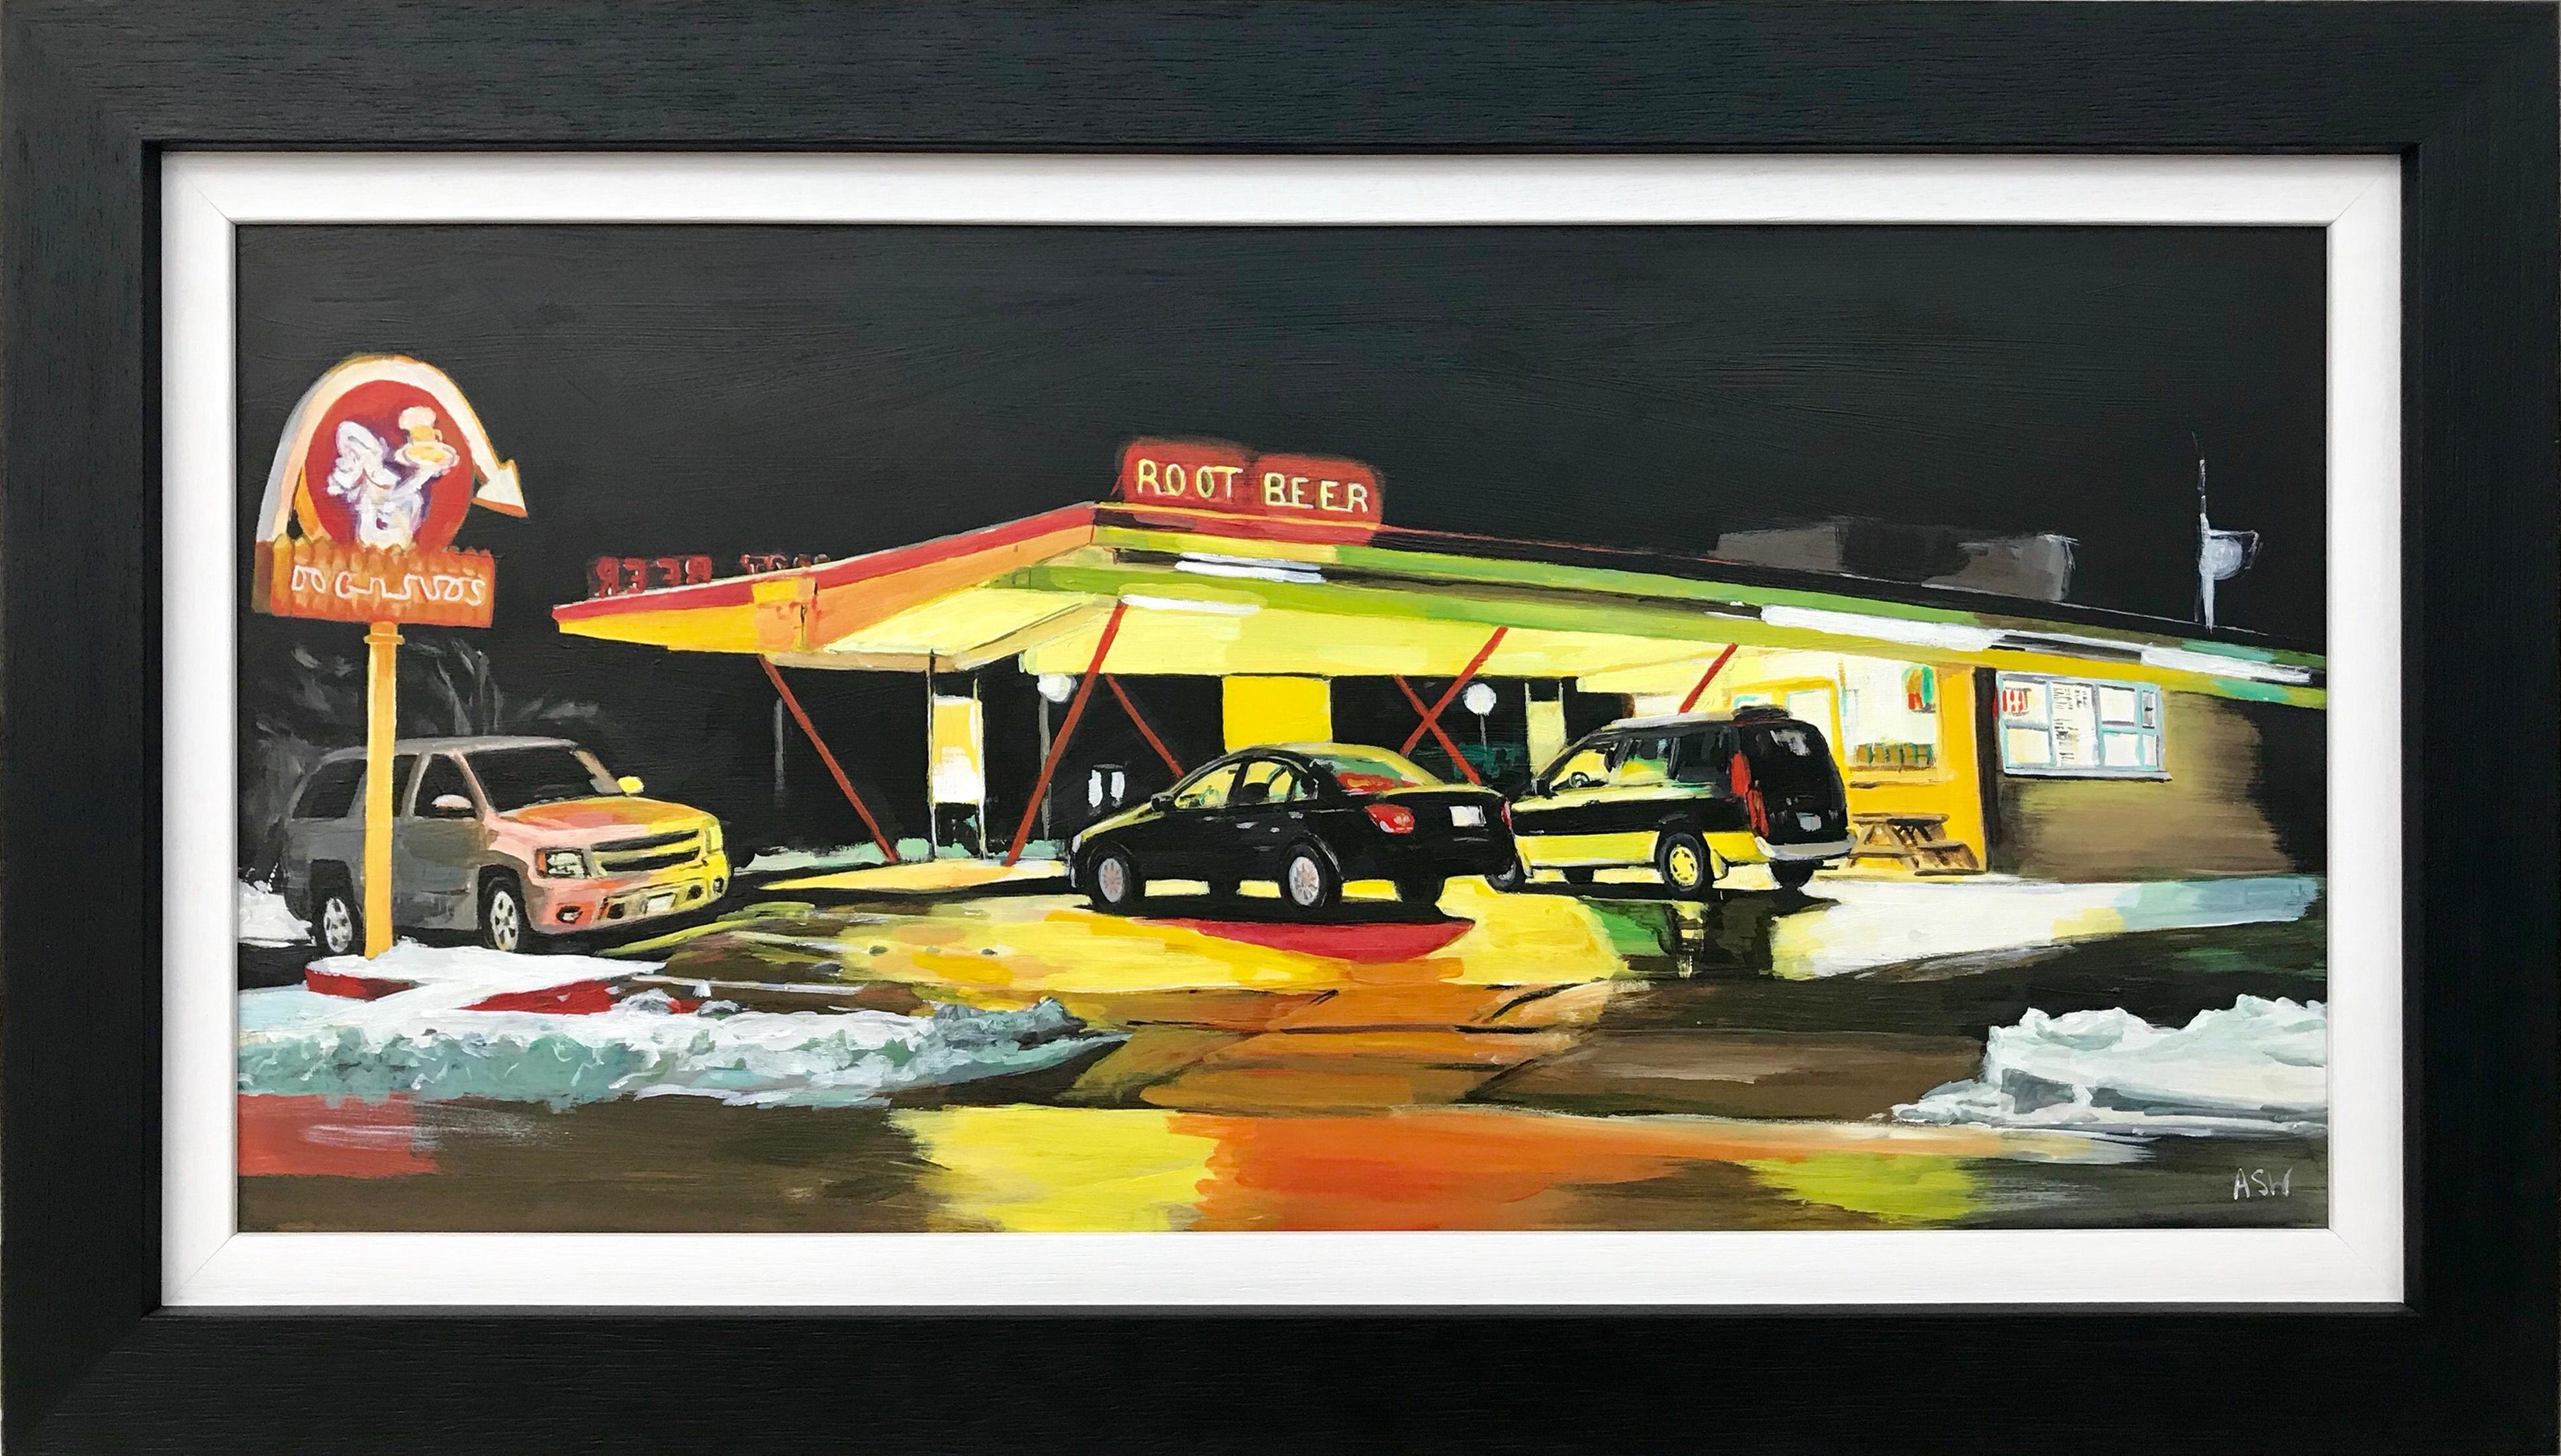 Route 66 Root Beer - Peinture d'une station de gaz américaine par un artiste contemporain britannique